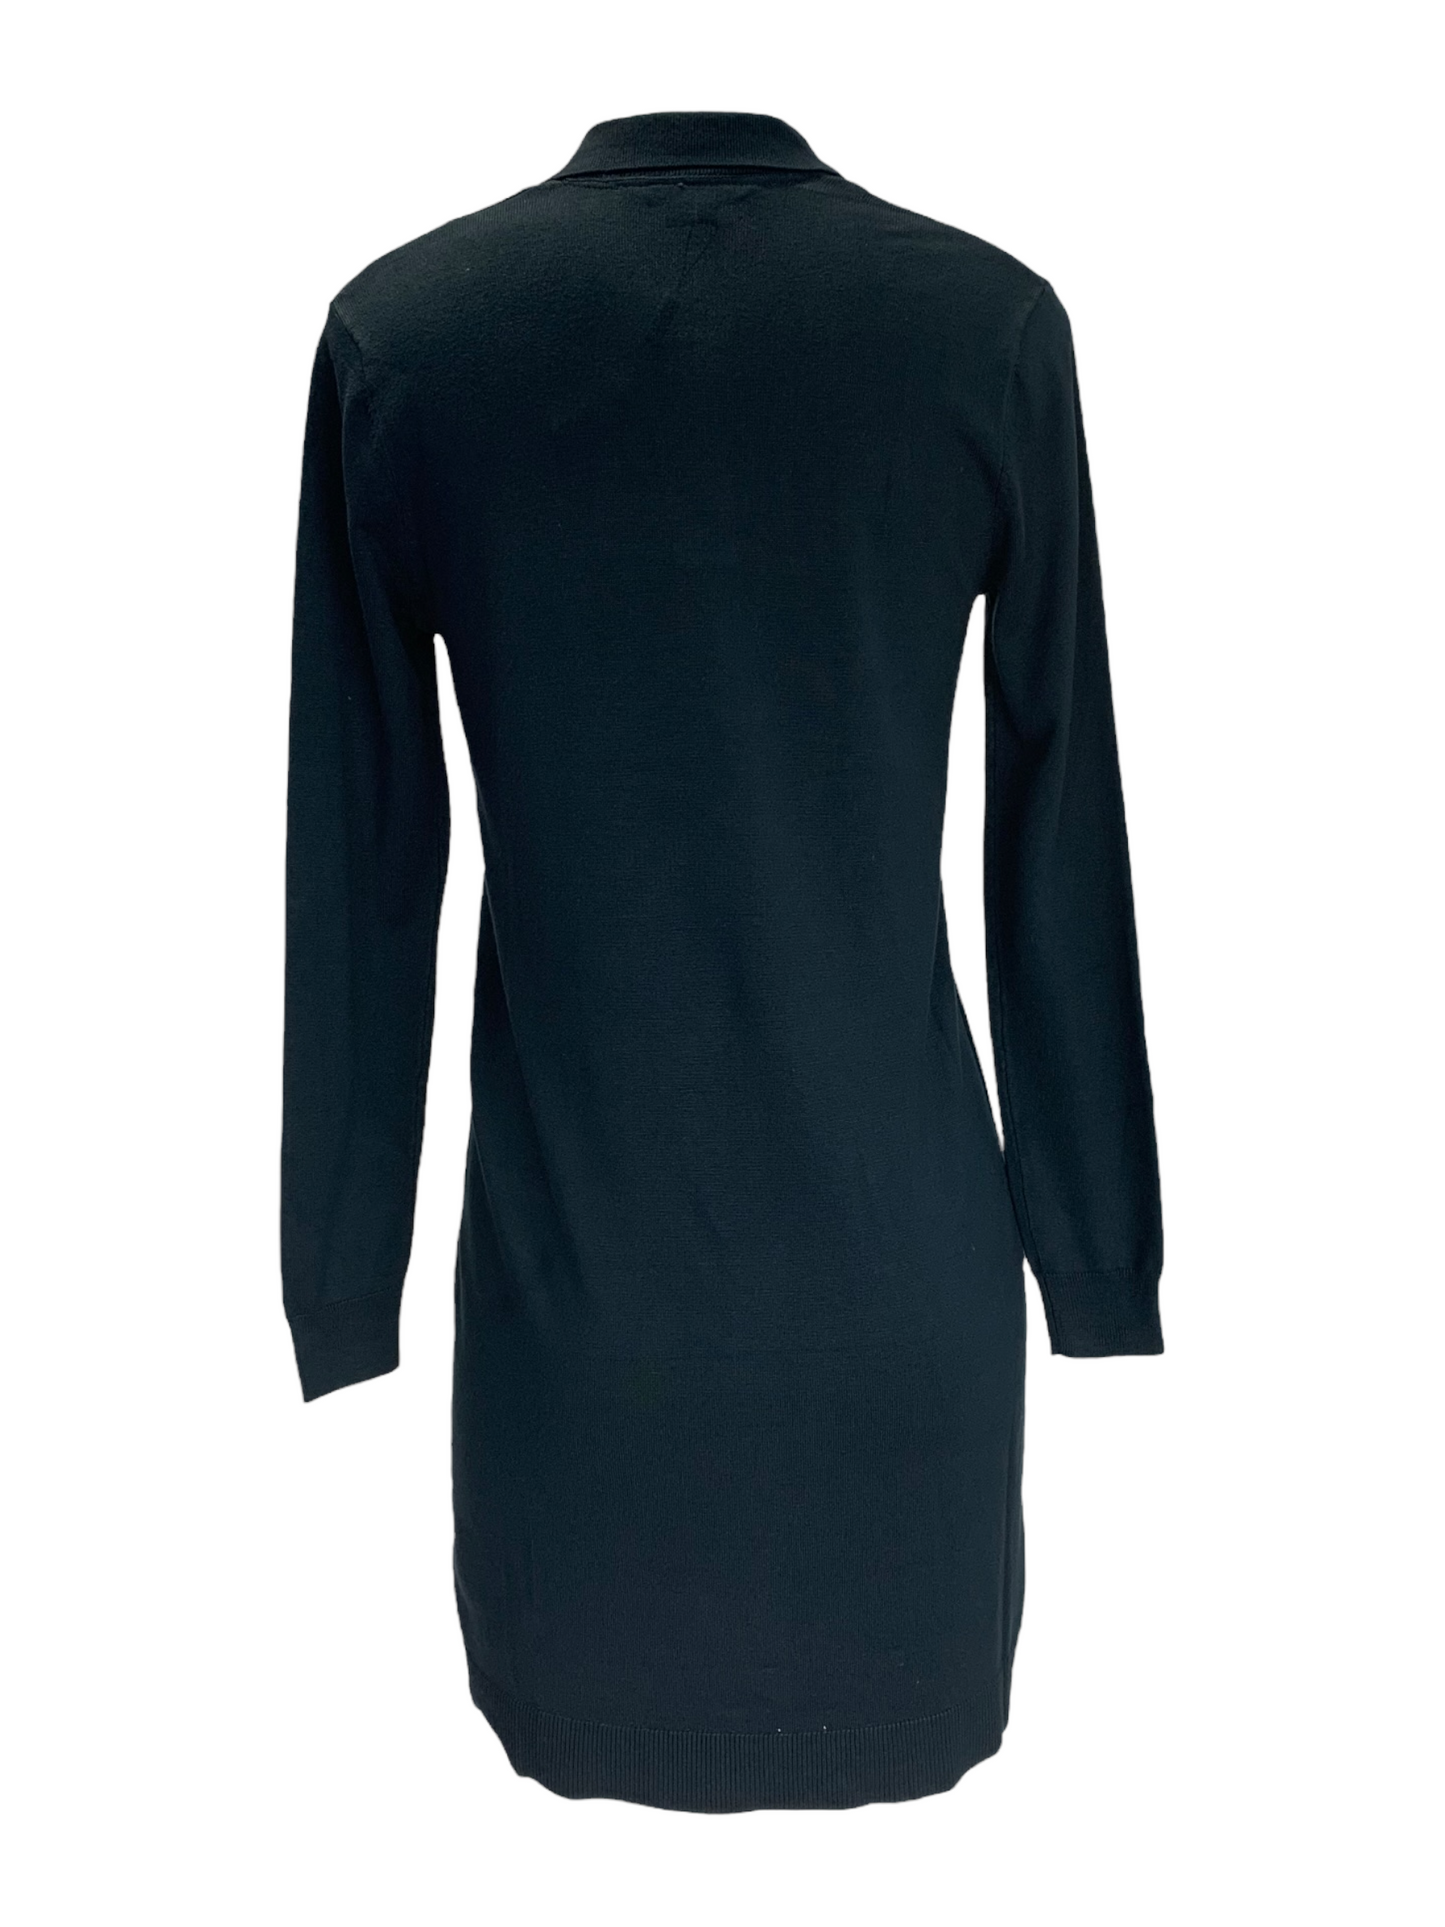 Women's Nass Woman black knit dress